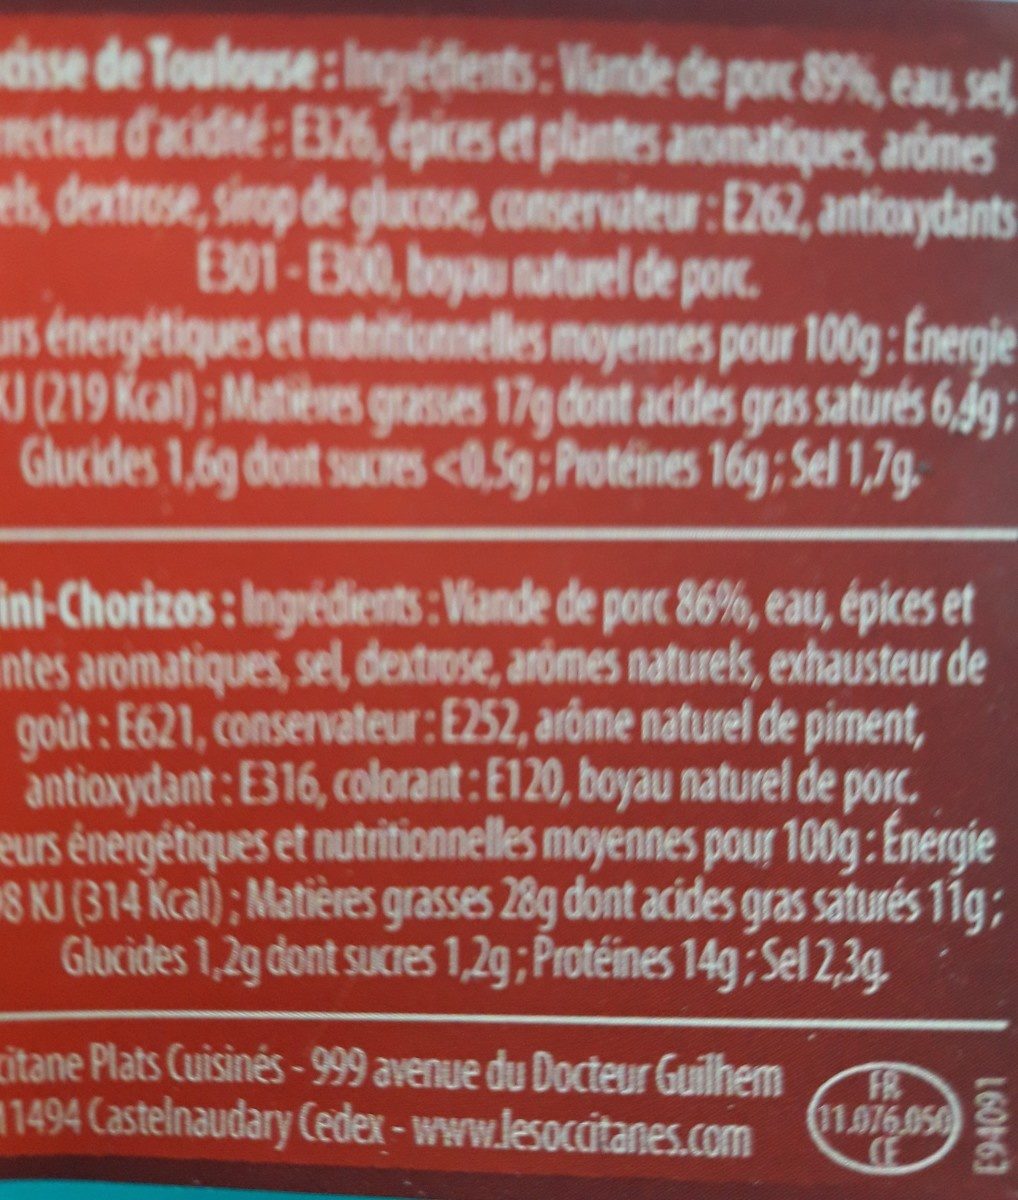 Saucisse de Toulouse et mini chorizos - Ingredients - fr